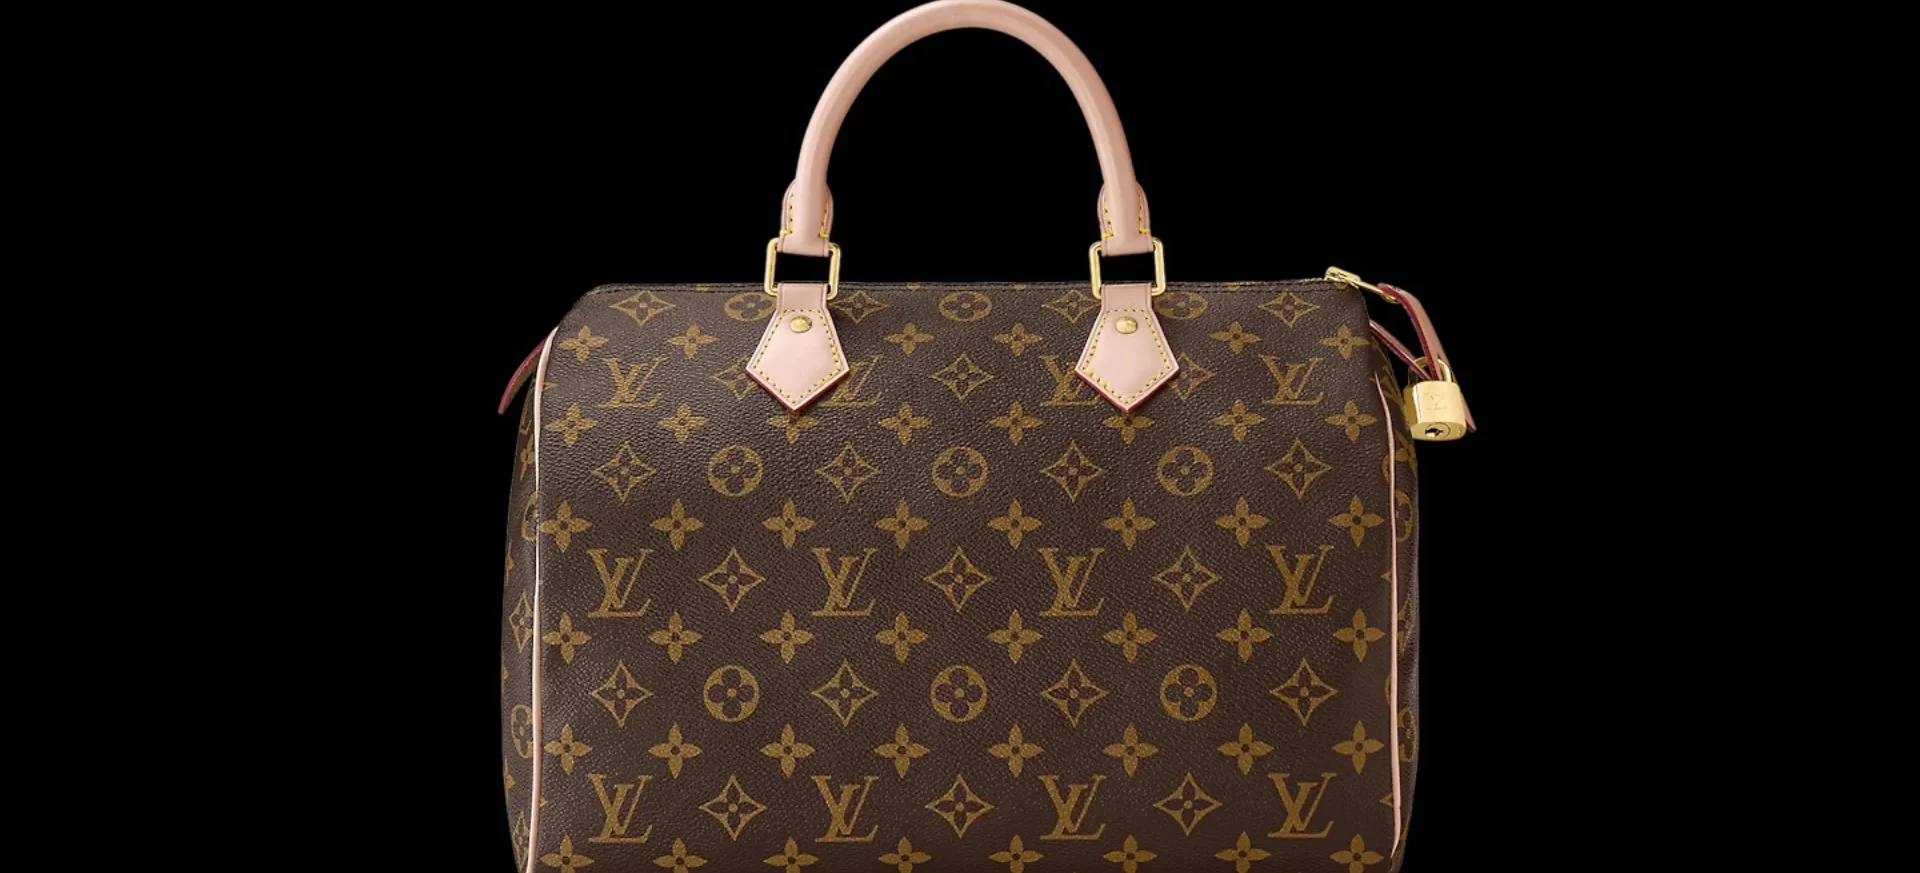 Historias de moda:¿cuál fue el primer bolso de Louis Vuitton?